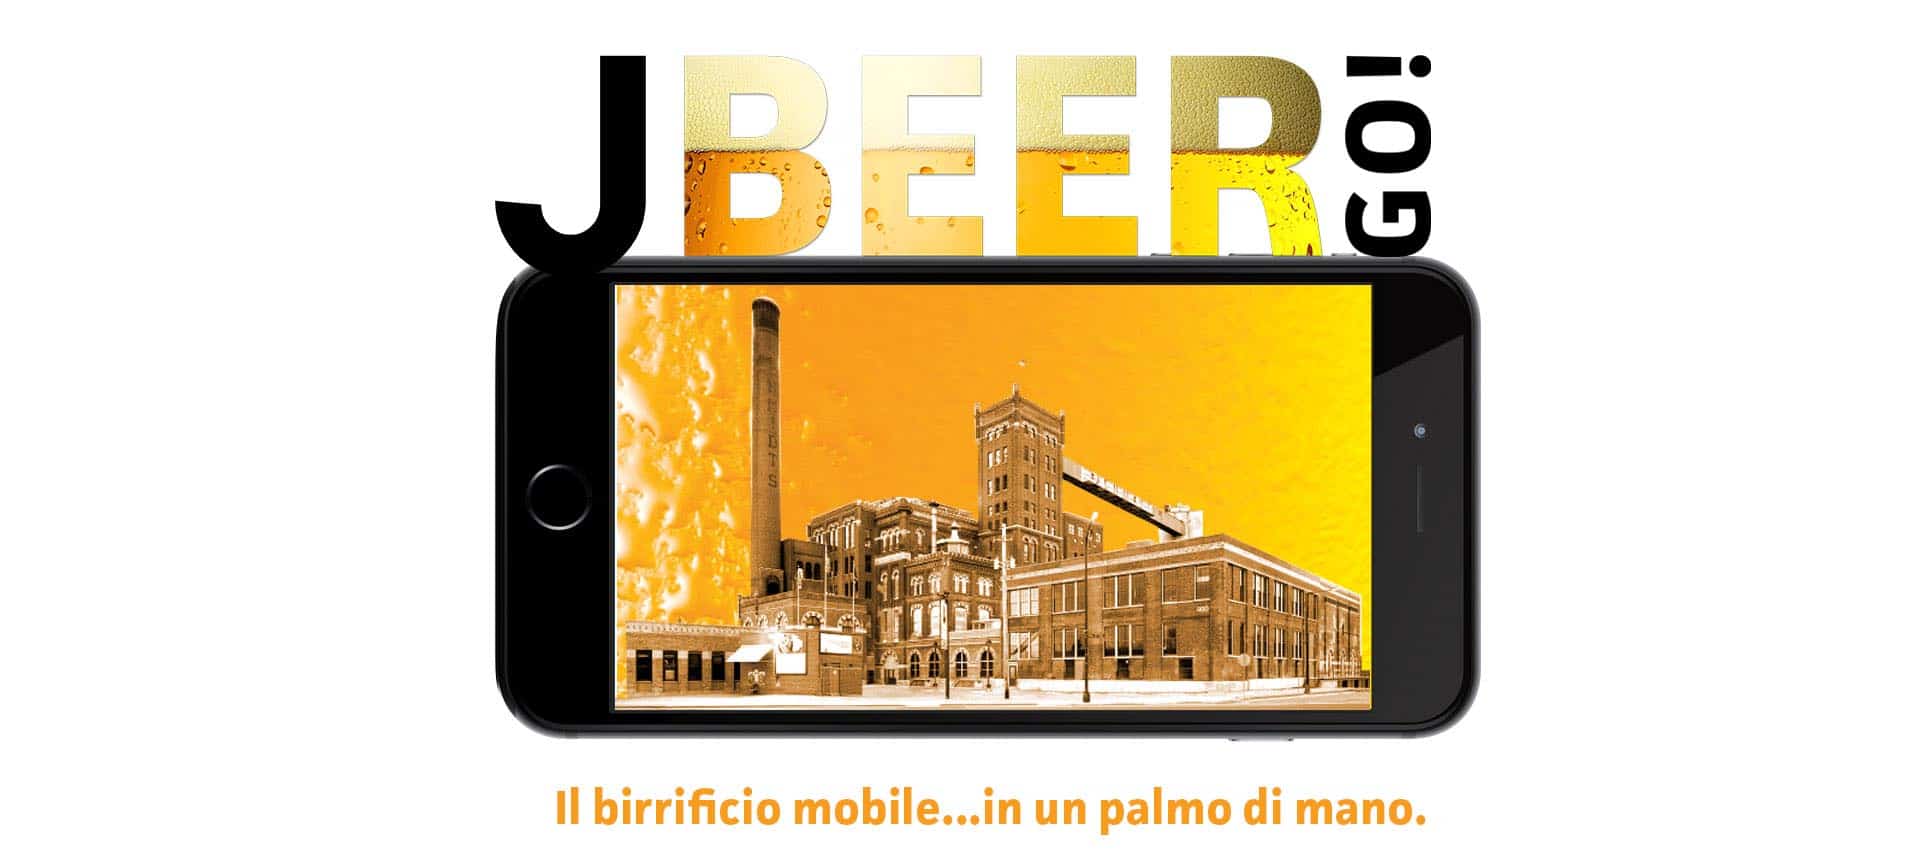 J-Beer go app birrificio per fiere ed eventi